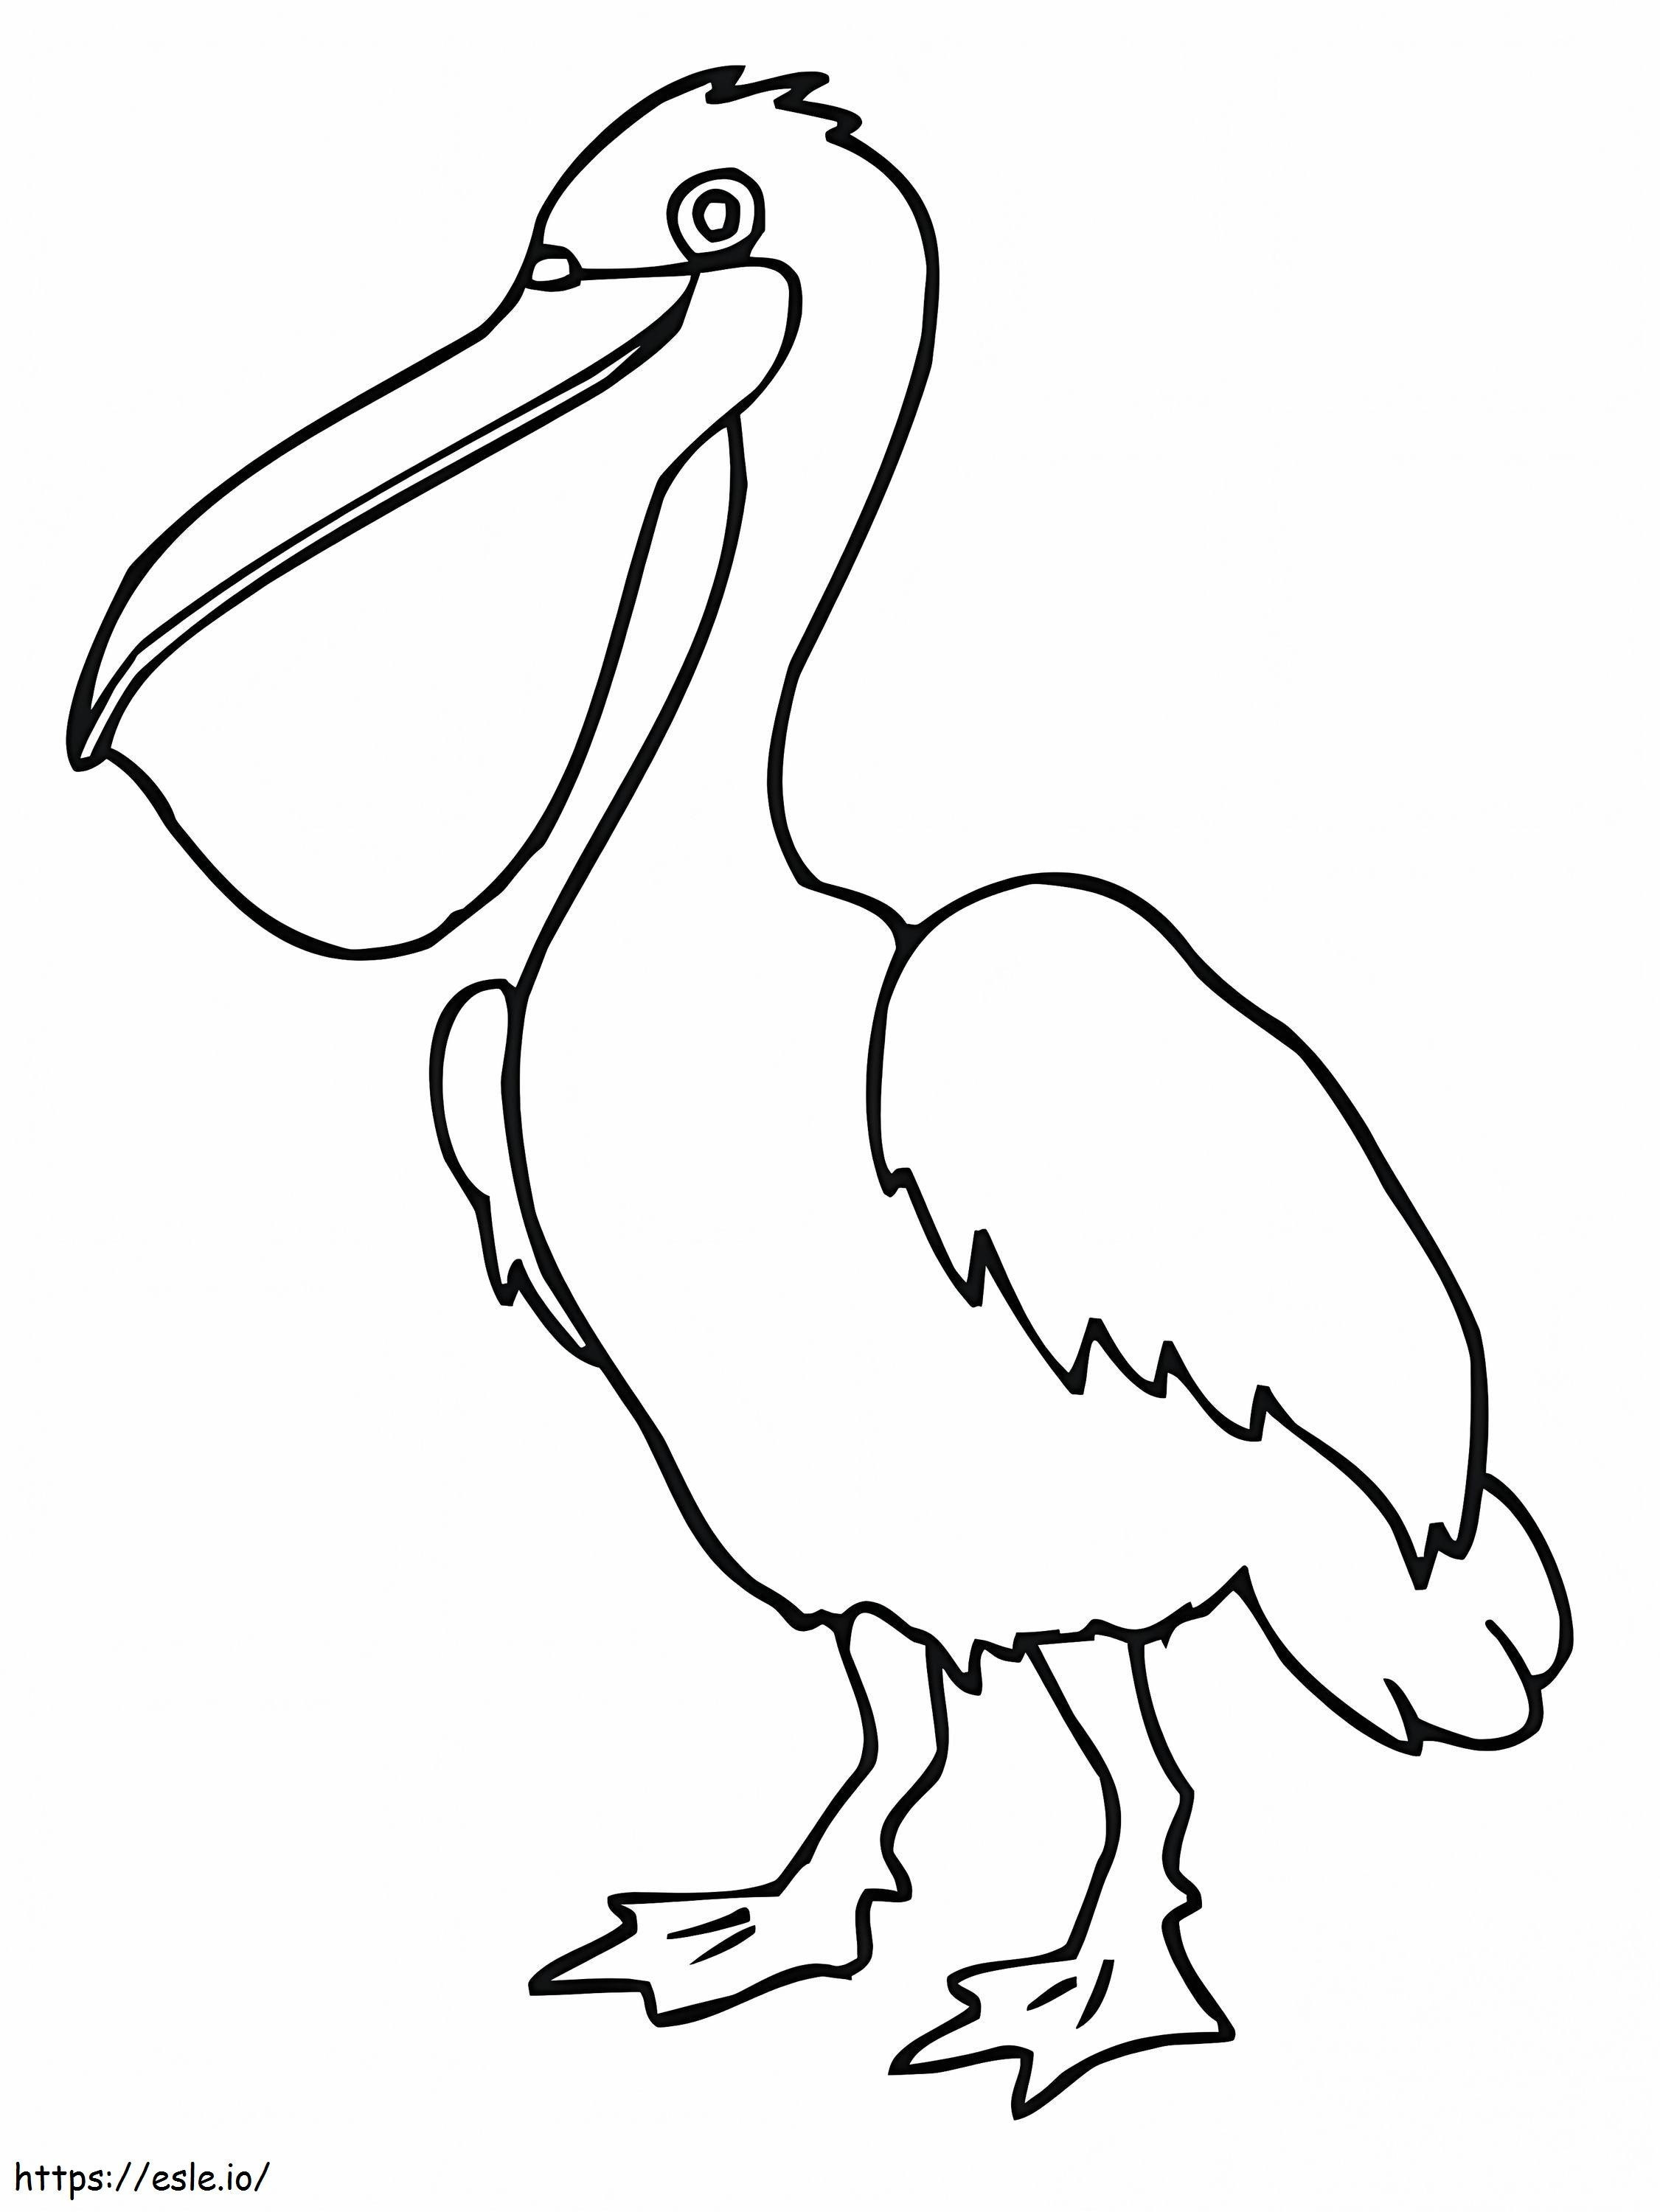 Normale pelikaan kleurplaat kleurplaat